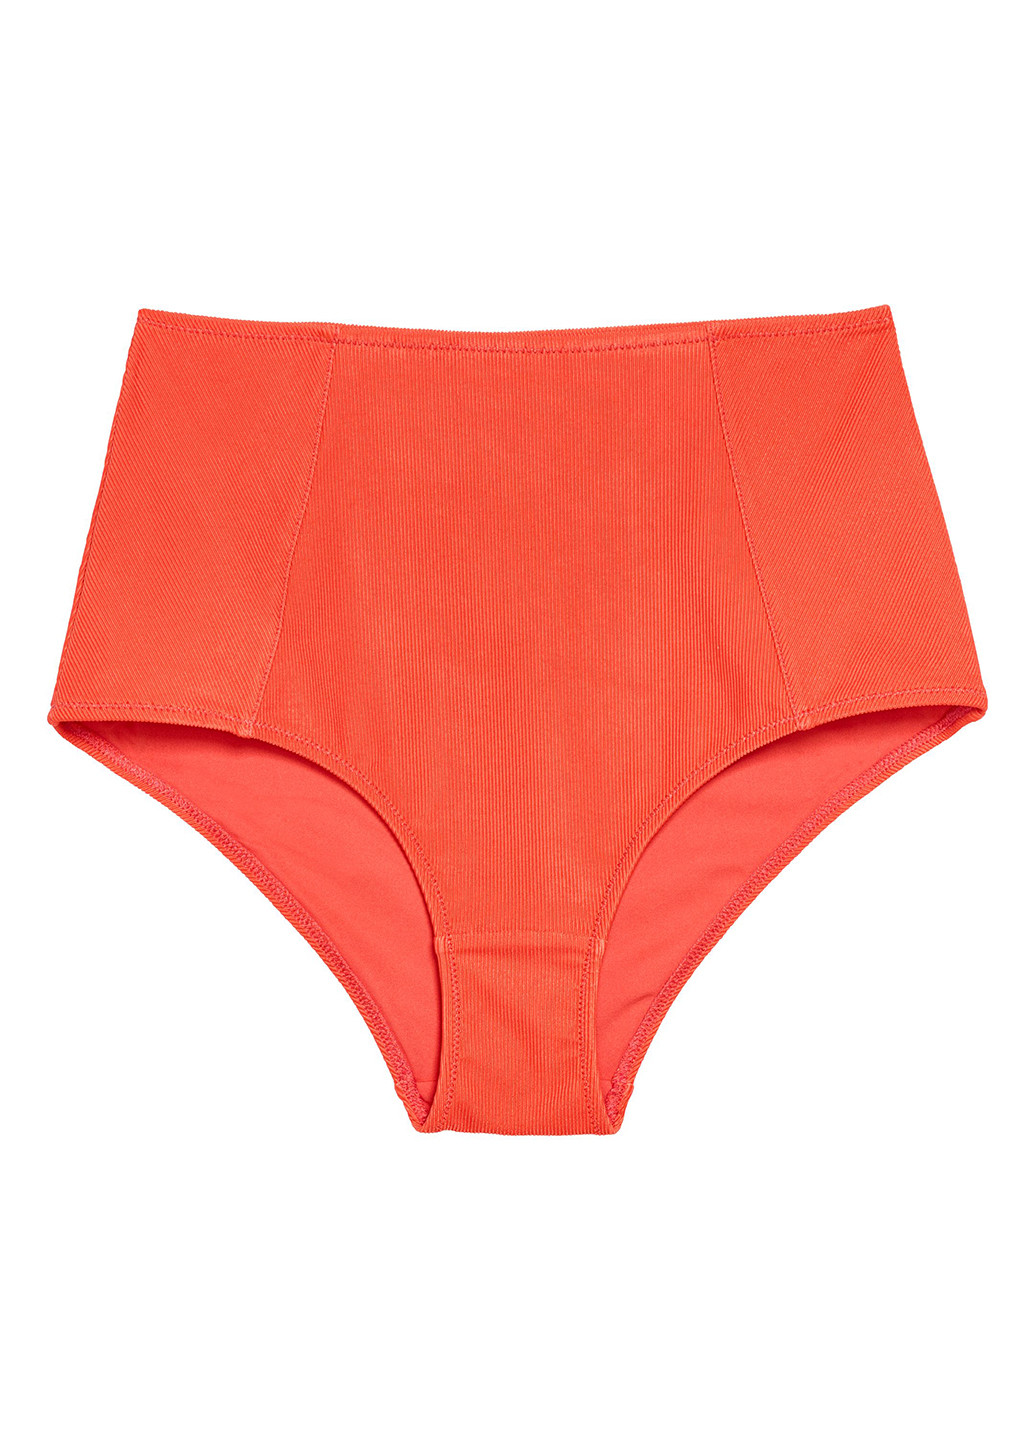 Купальні труси H&M однотонні помаранчеві пляжні поліамід